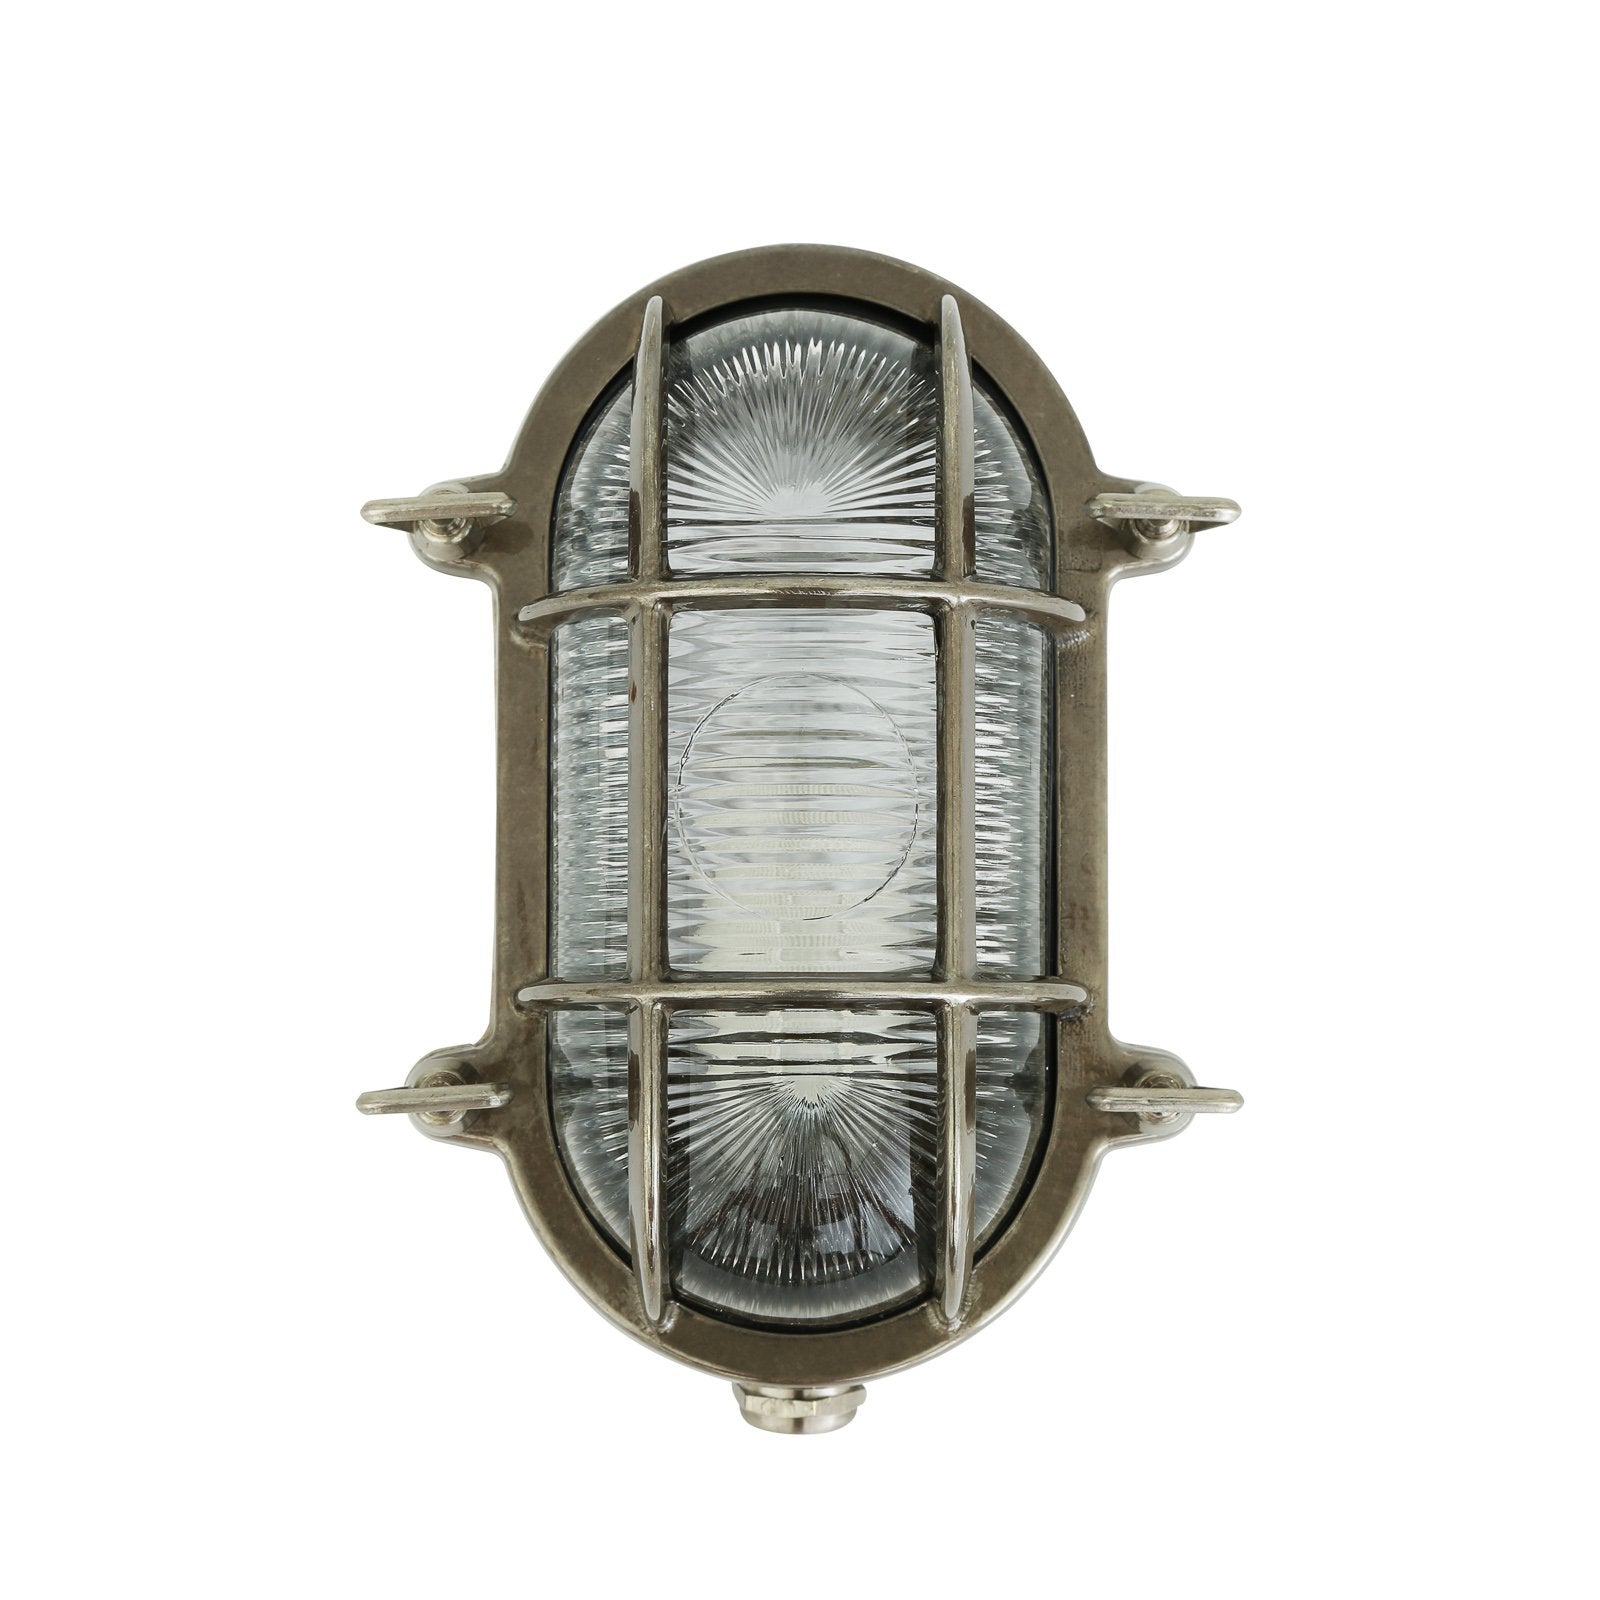 Ruben Small Oval Marine Light IP64 - Wall Lights from RETROLIGHT. Made by Mullan Lighting.